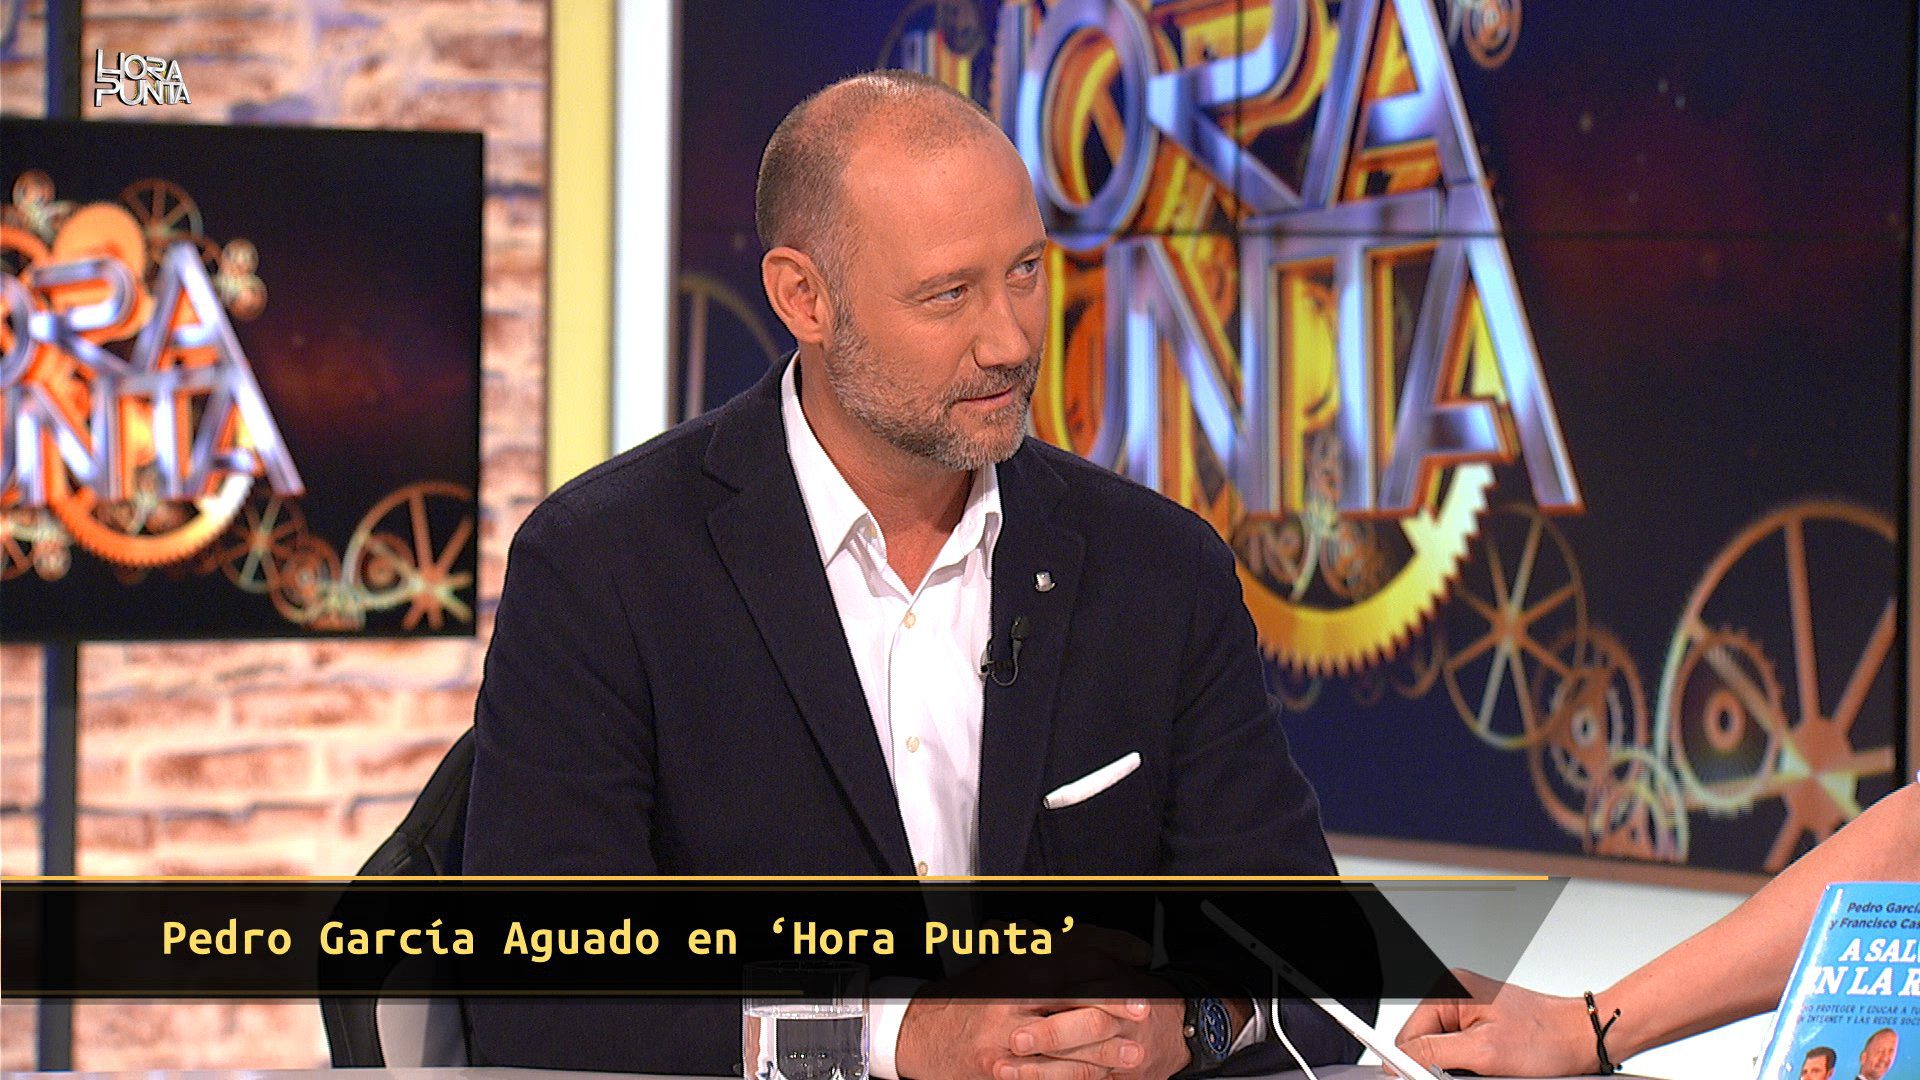 Pedro García Aguado en 'Hora punta'